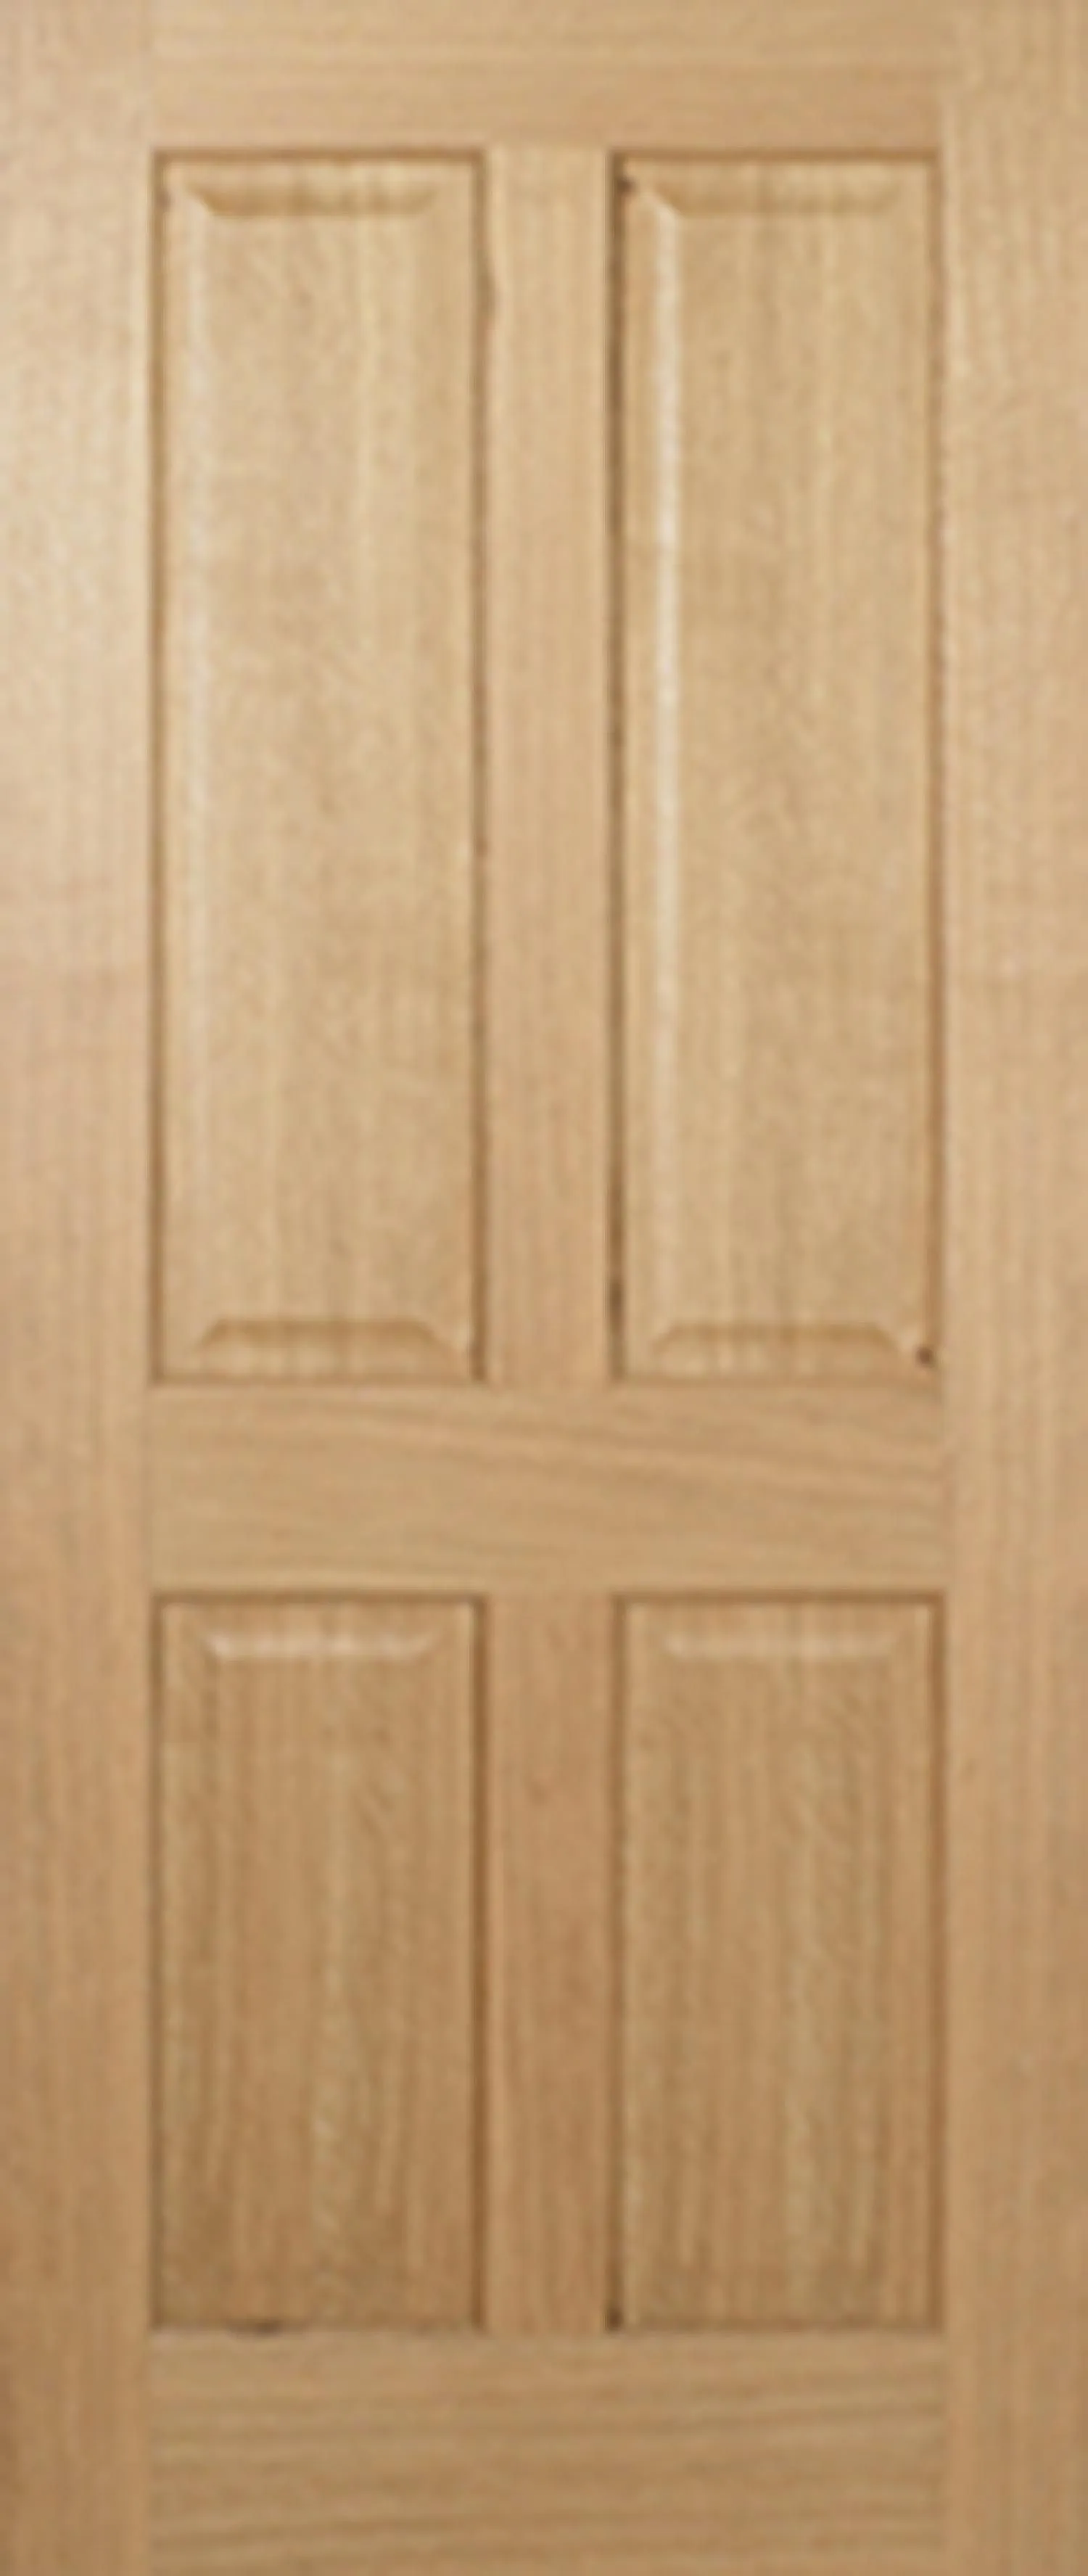 Regency Solid Core FD30 Internal Door - Unfinished - 4P Non Raised  1981 x 838mm Oak   FCOREG4P33